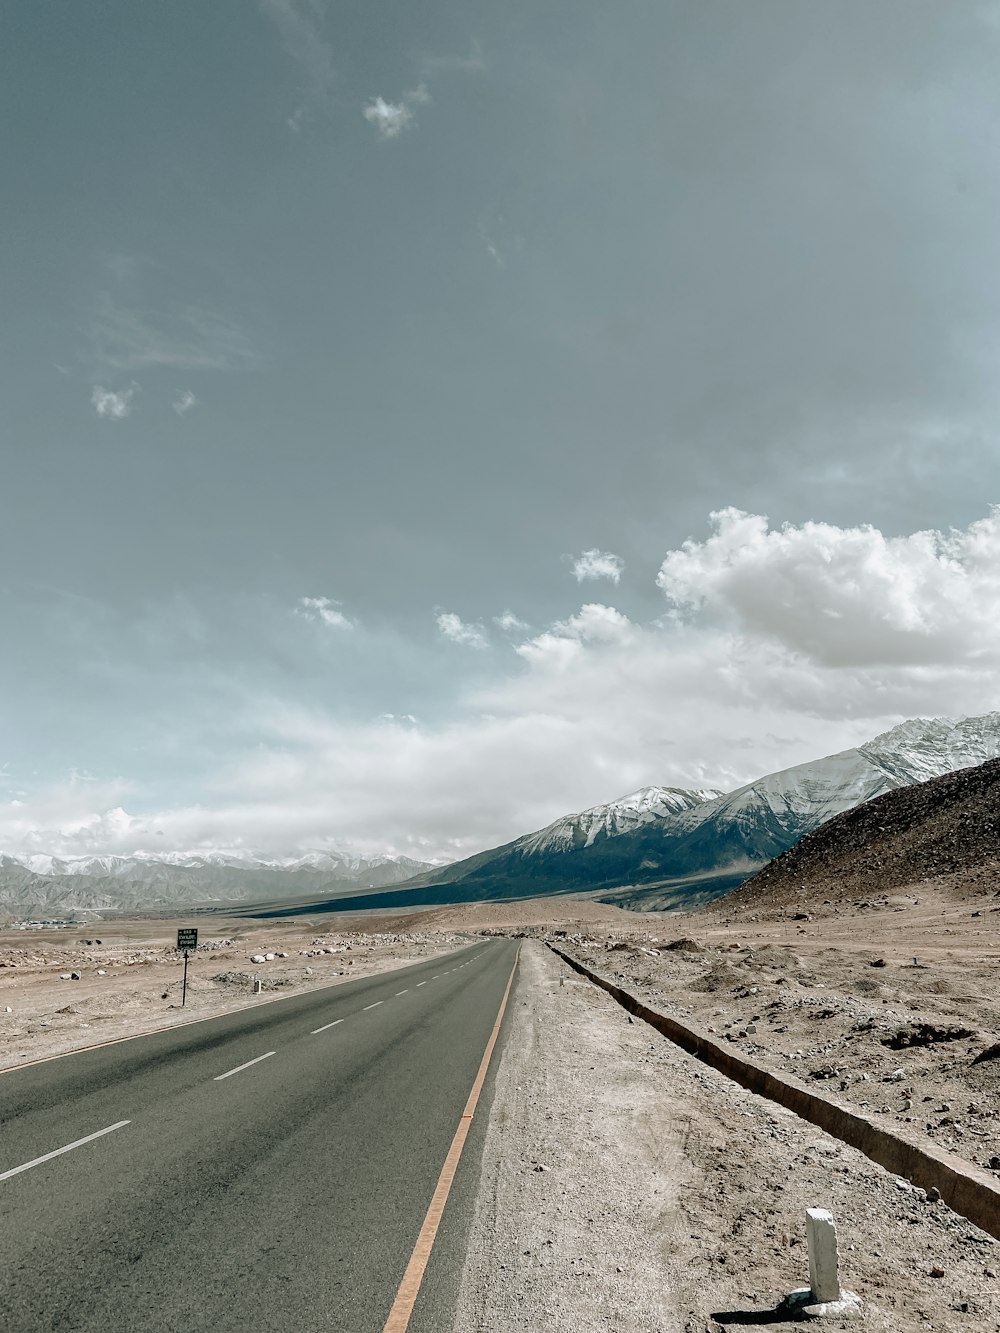 Une route vide au milieu du désert